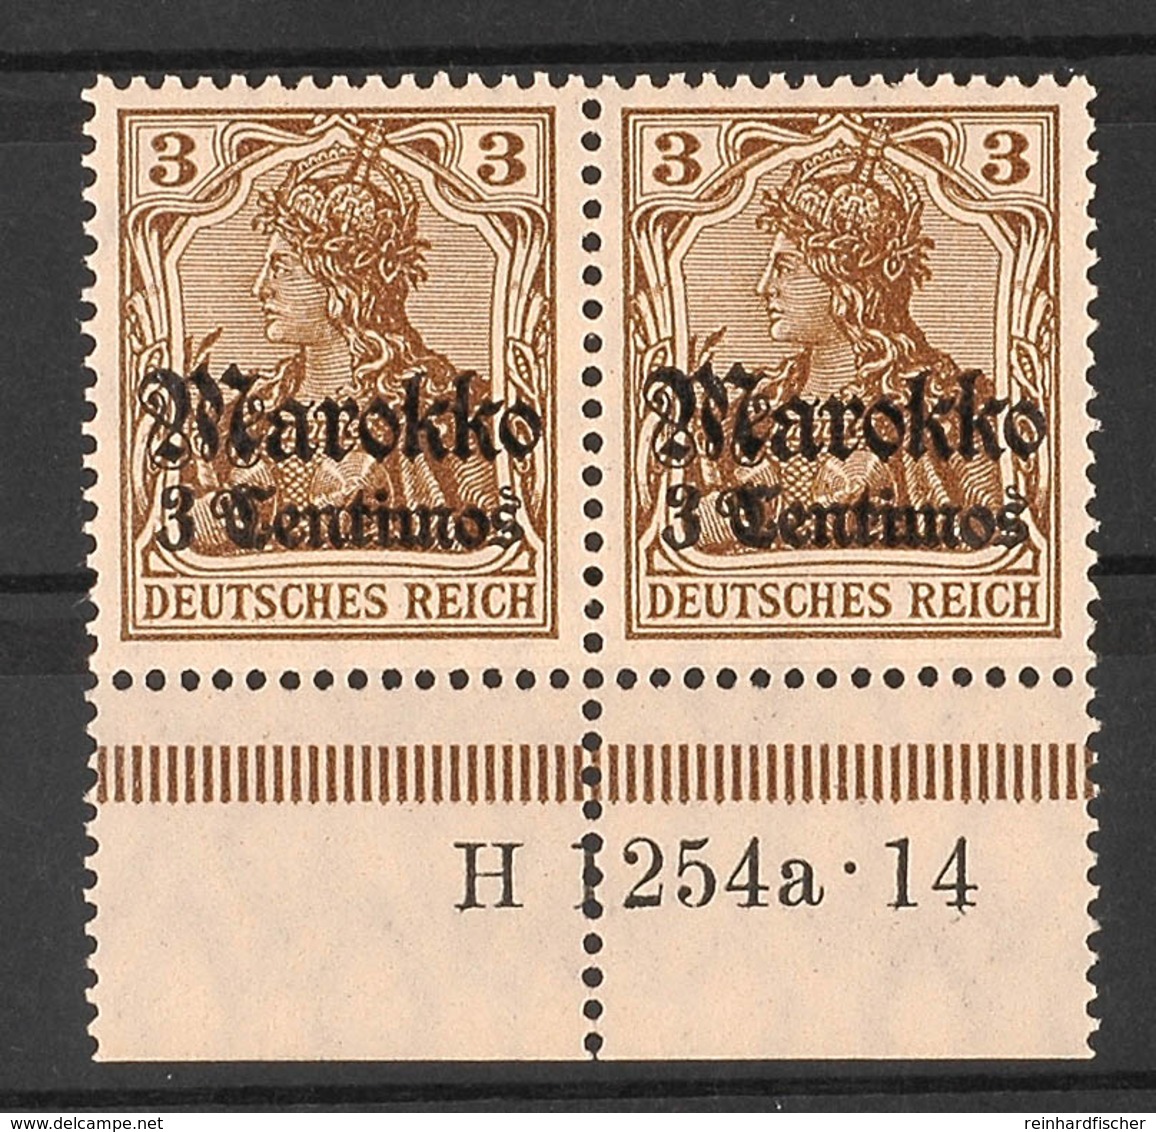 3 C. Auf 3 Pfg Germania Mit Wasserzeichen, Postfrisches Kabinettpaar Mit Unterrand (angetrennt) Und HAN "H 1254a 14", Ka - Deutsche Post In Marokko